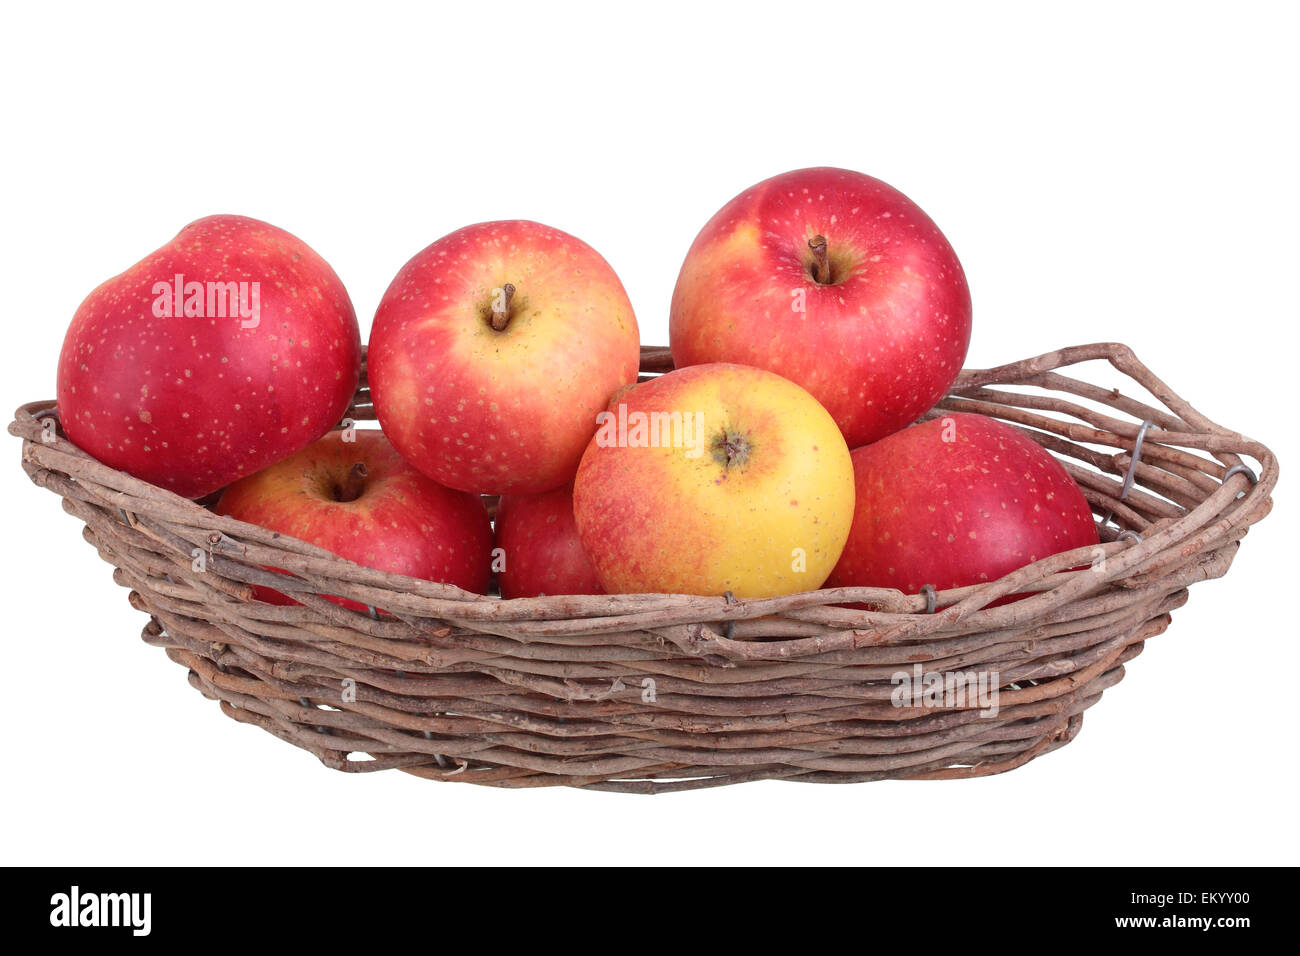 Apple variedad Ruhm aus Kelsterbach, manzanas en una canasta de frutas Foto de stock